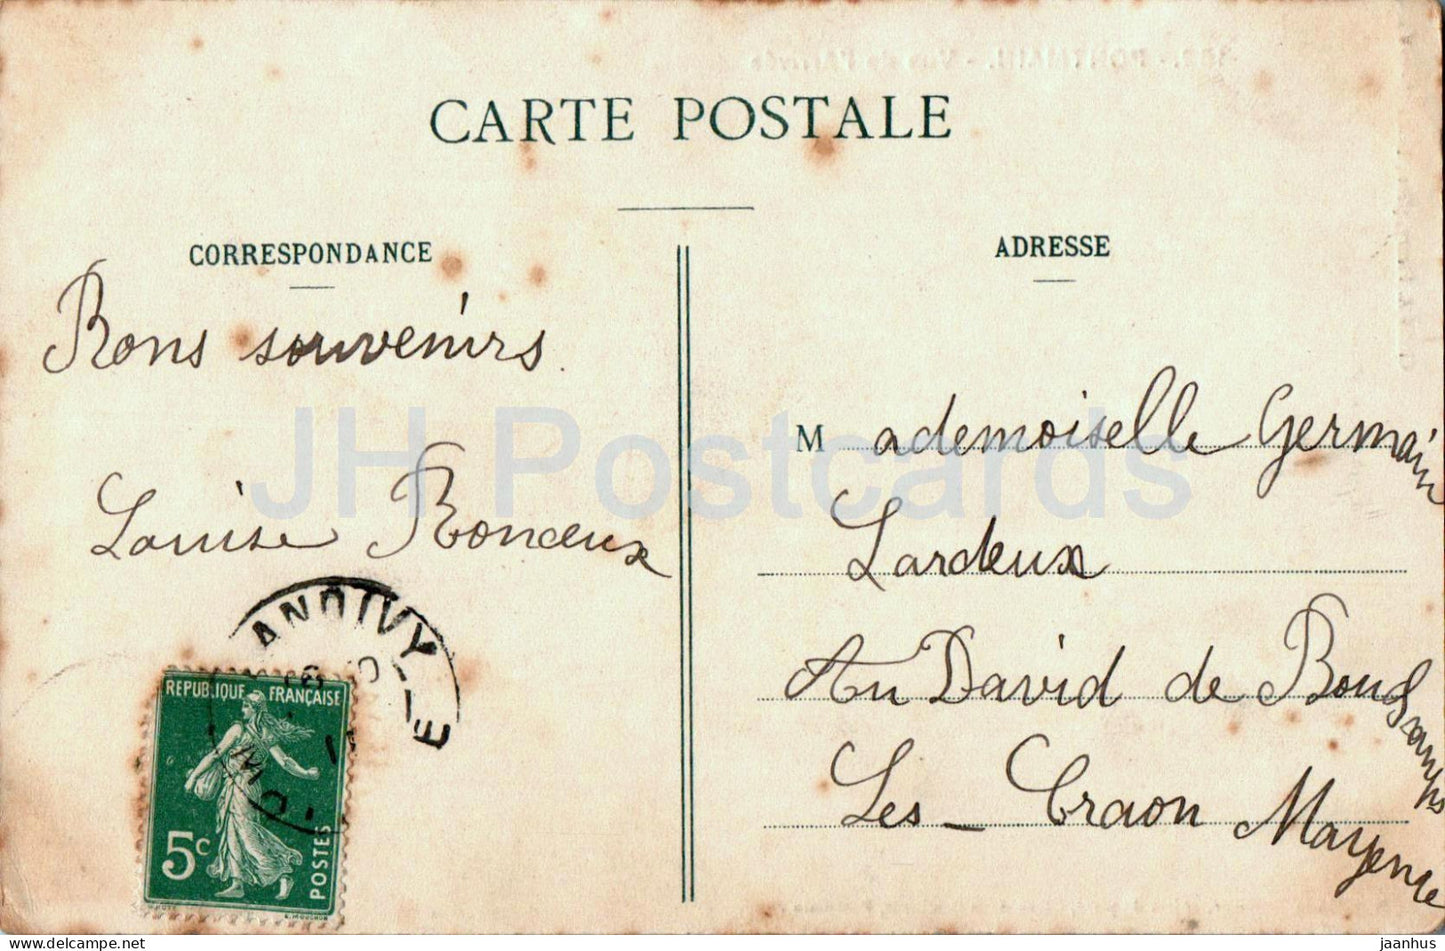 Pontmain - Vue de l'Arrivée - chemin de fer - 152 - carte postale ancienne - 1911 - France - utilisé 